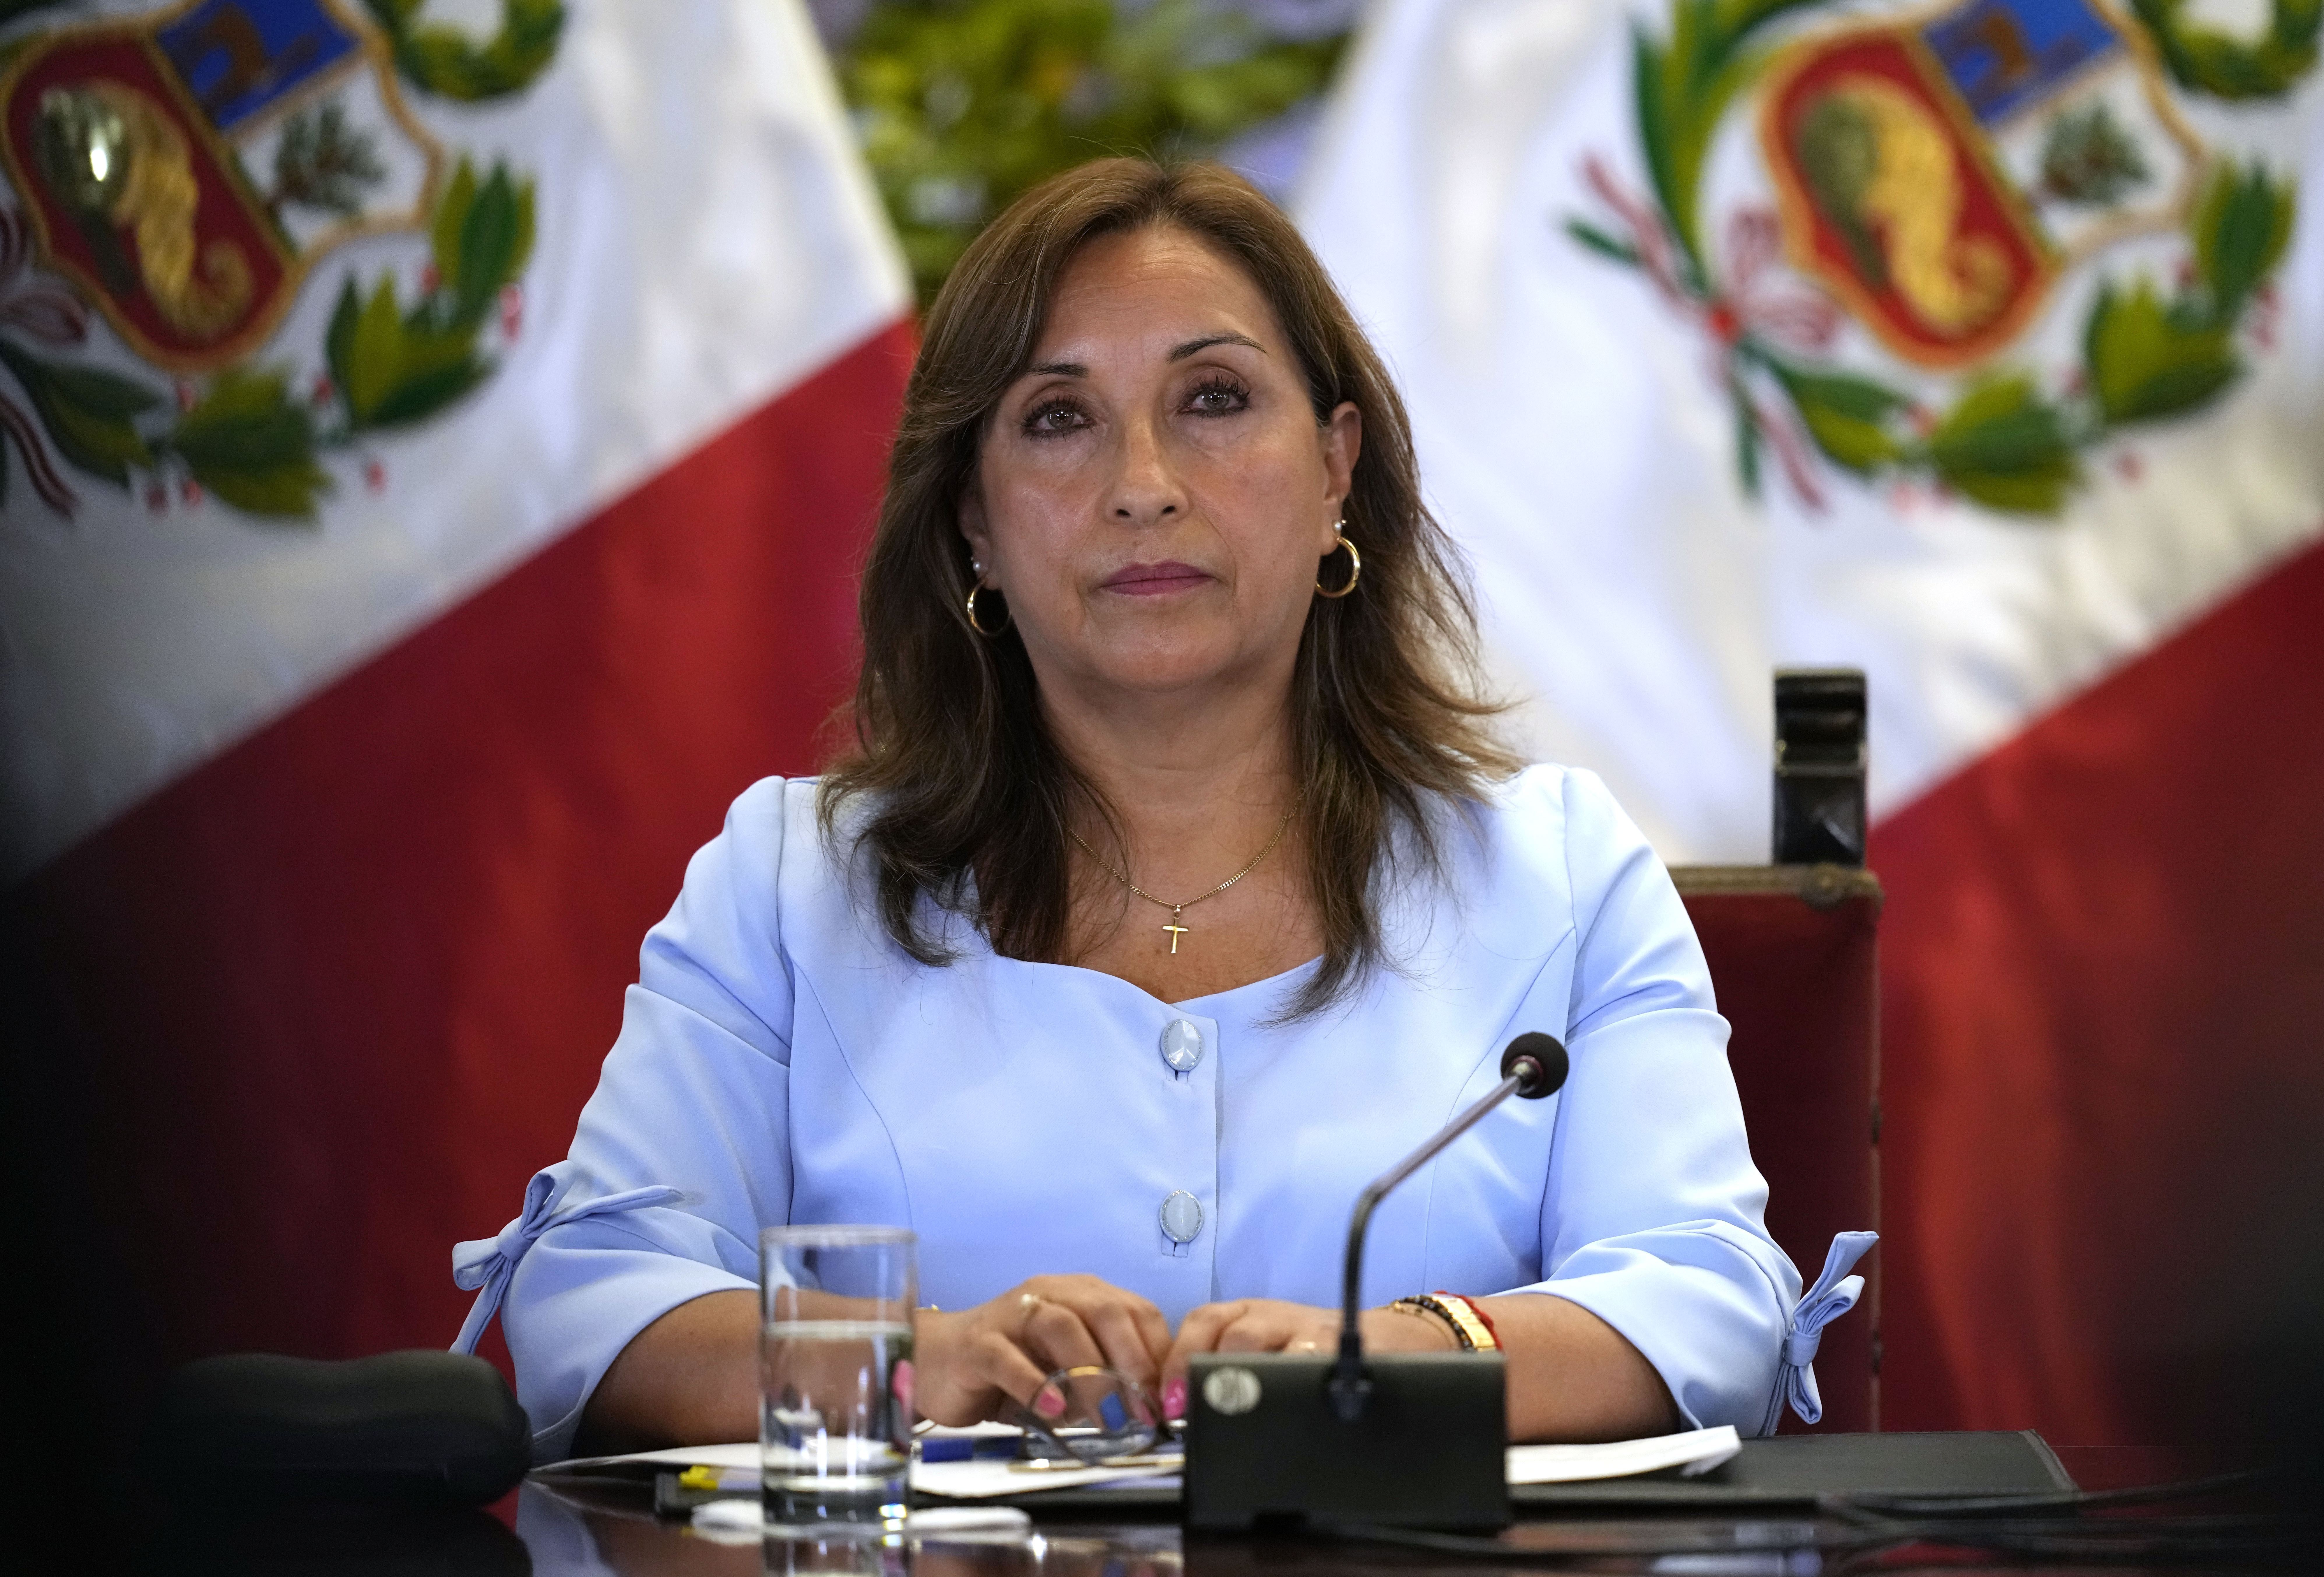 La presidenta peruana Dina Boluarte ofrece una conferencia de prensa en el palacio de gobierno en Lima, Perú, el viernes 10 de febrero de 2023. (Foto AP/Martín Mejía)